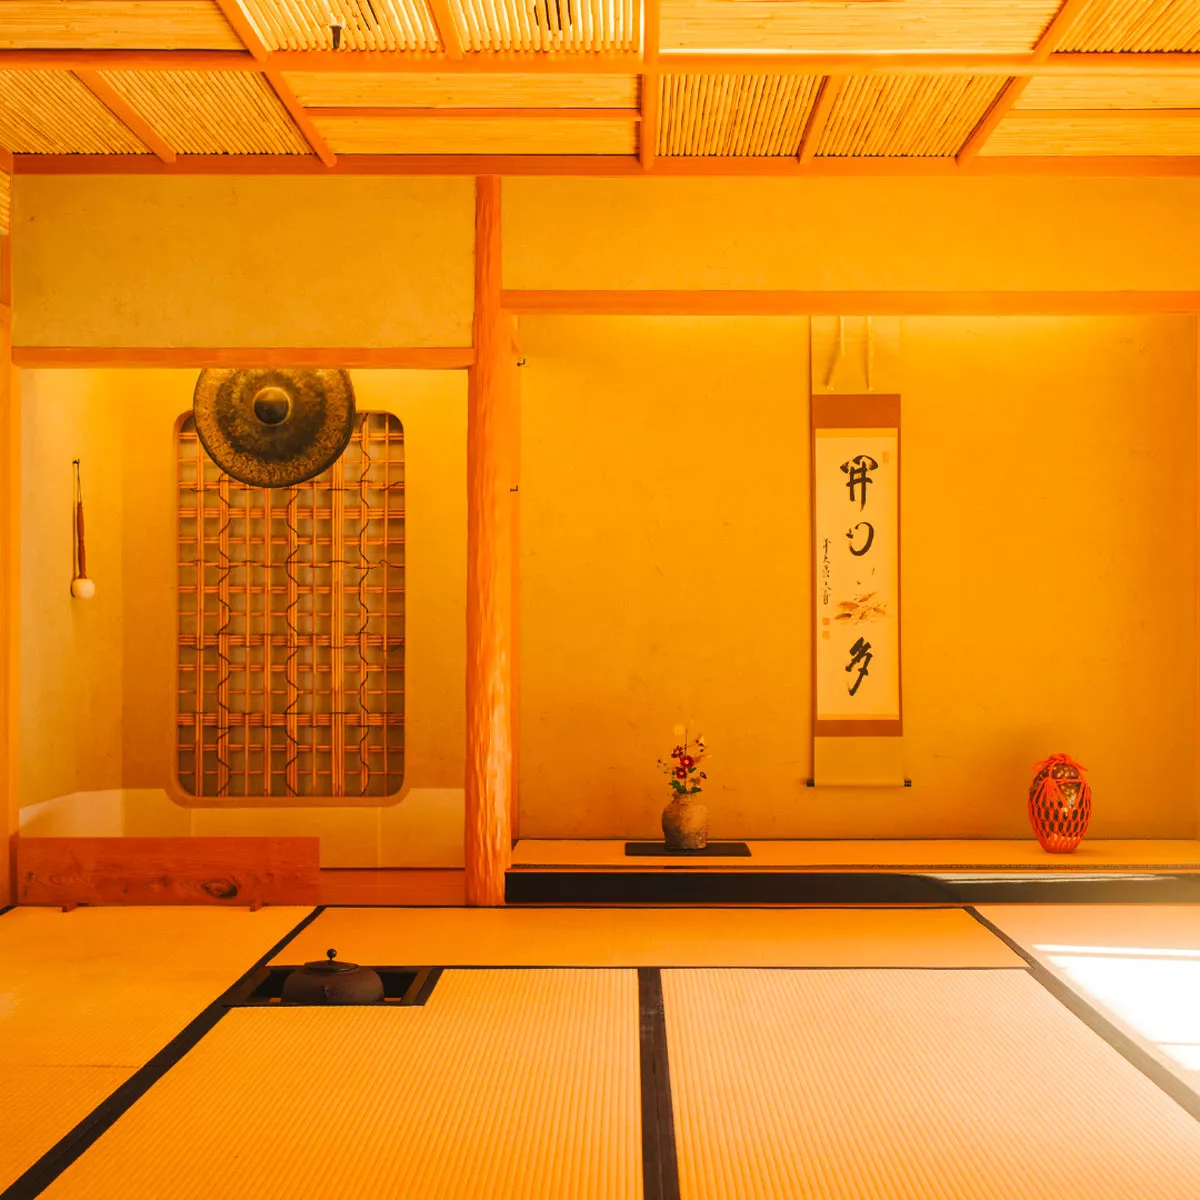 Japanisches Teehaus von innen